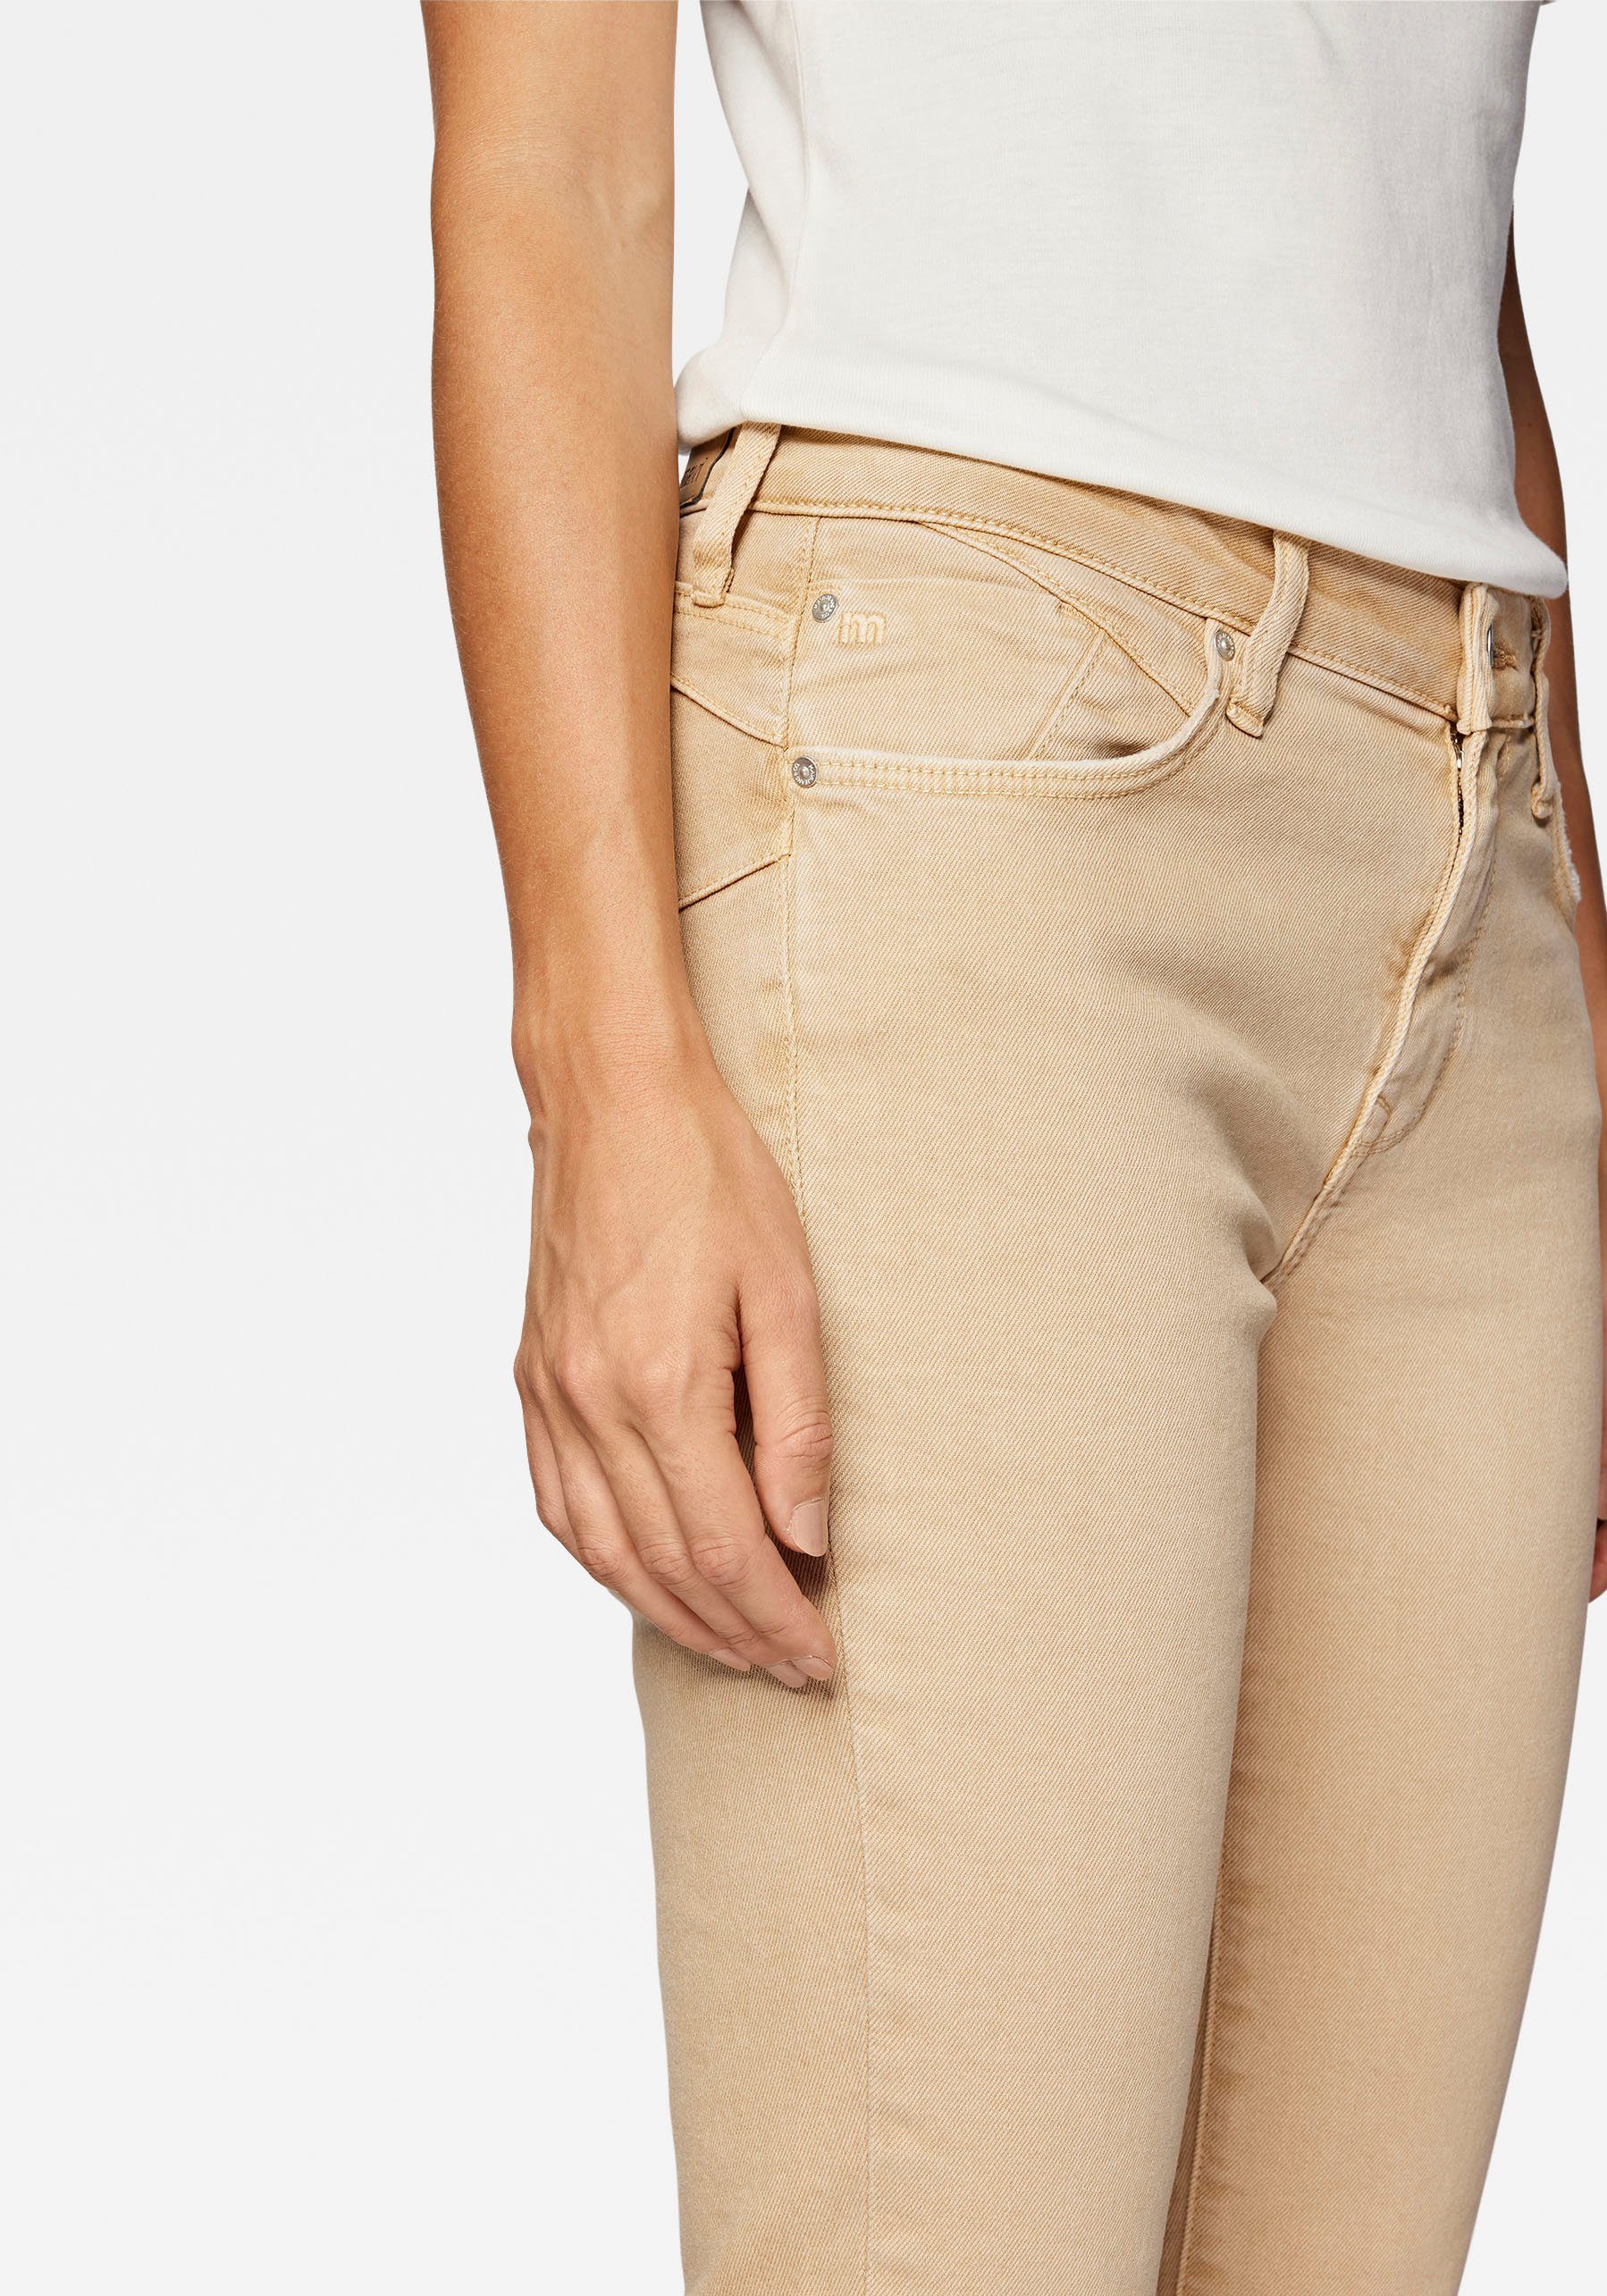 Mavi Slim-fit-Jeans trageangenehmer camel Stretchdenim Verarbeitung dank (beige) hochwertiger